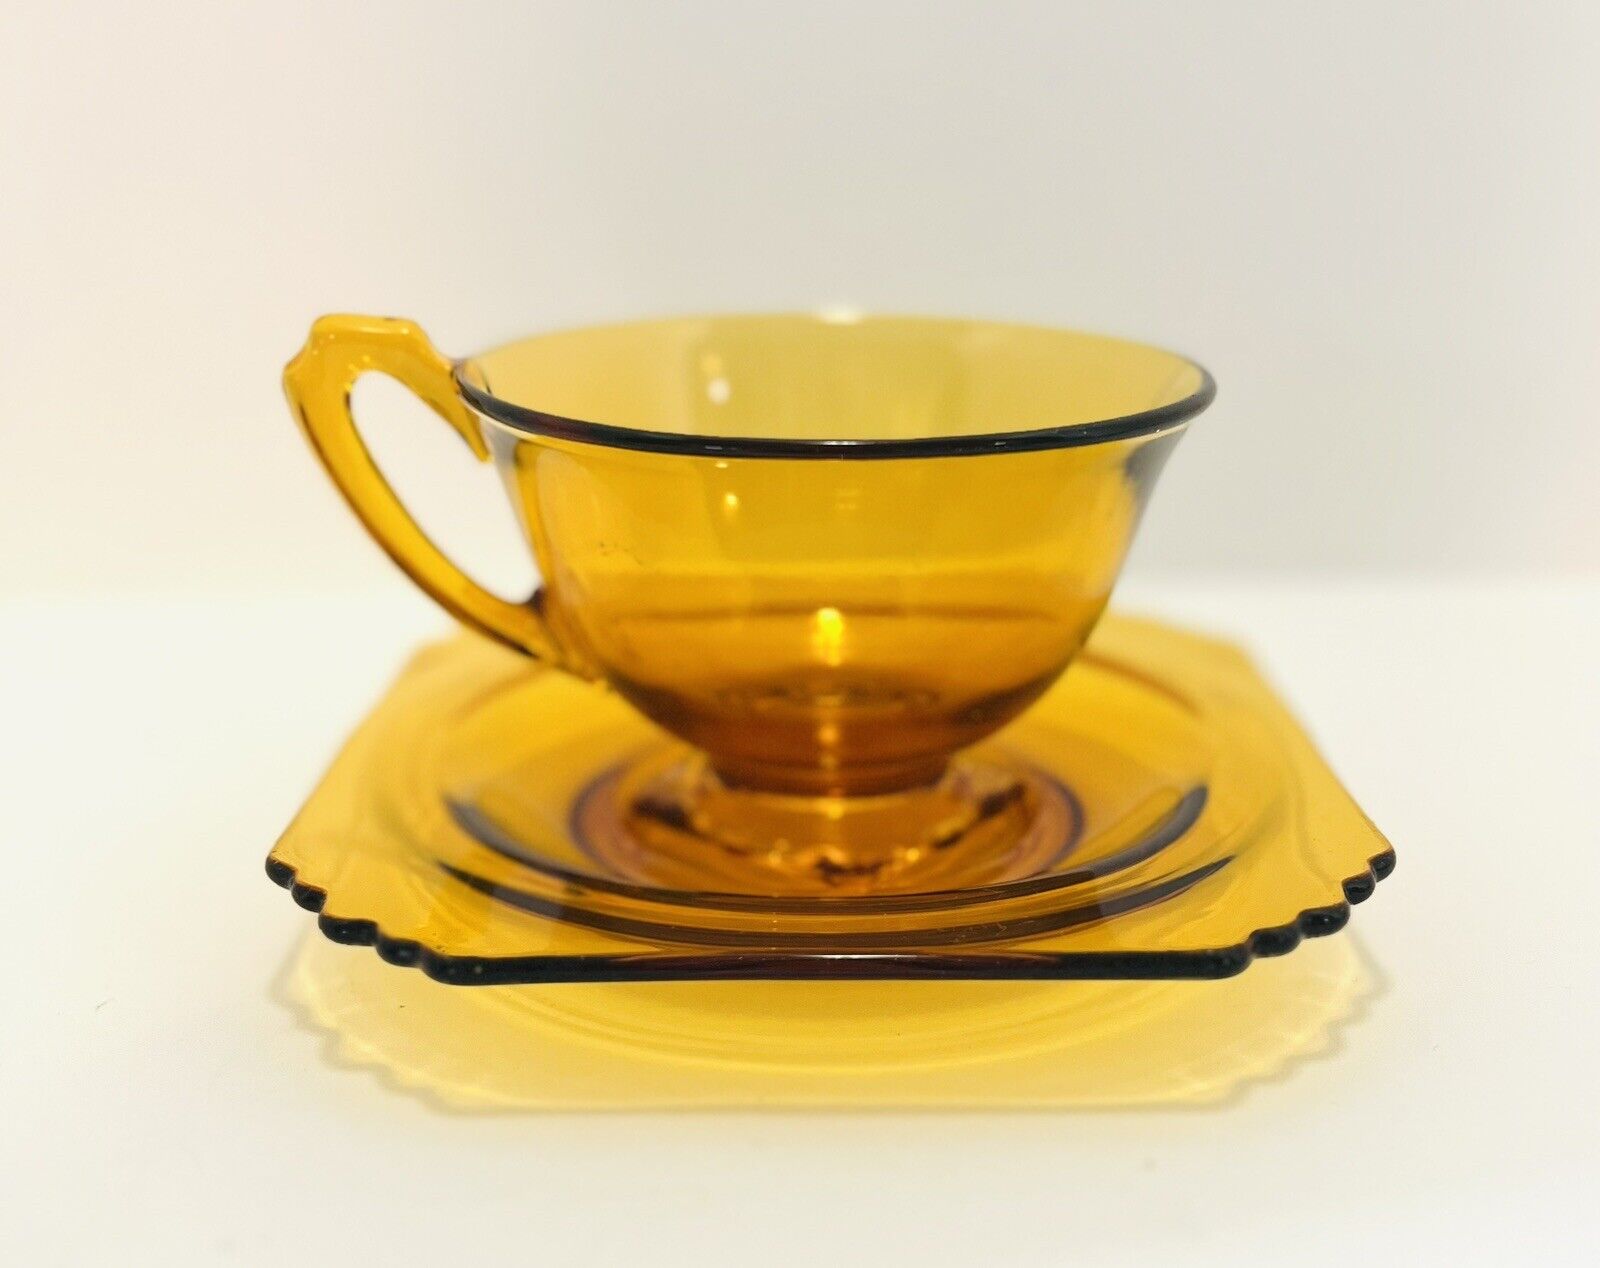 Vintage Diamond Glass Amber Cup & Saucer Set 1930 Elegant Depression